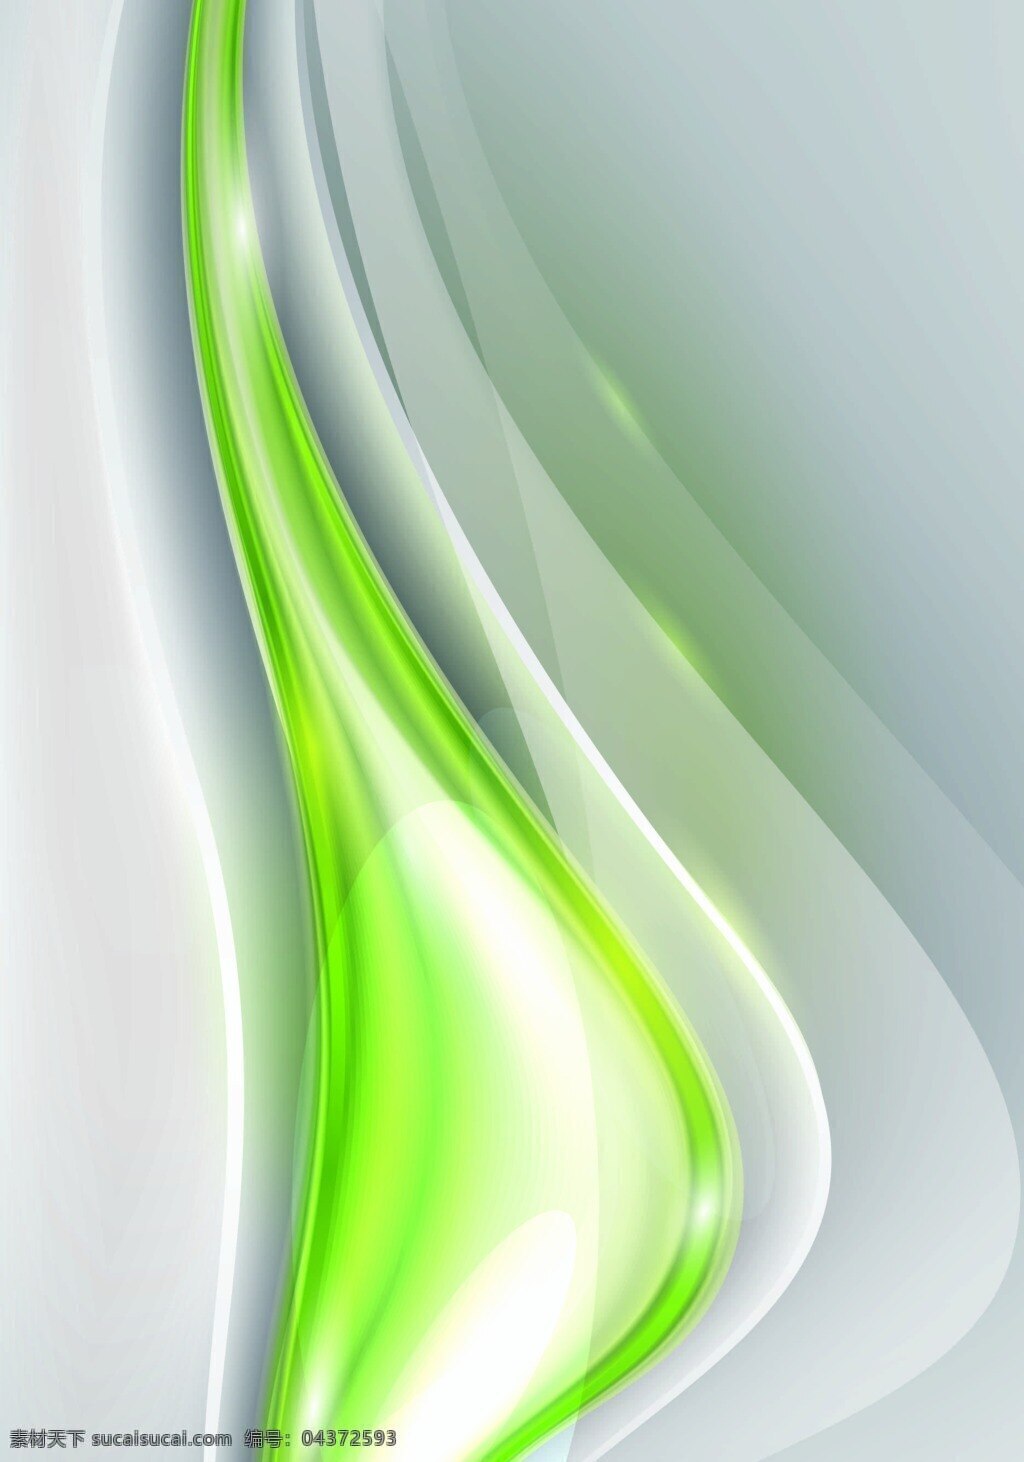 绿色 曲线 背景 模版 商务小清新 矢量素材 矢量背景模版 简约 背景绿色 矢量曲线